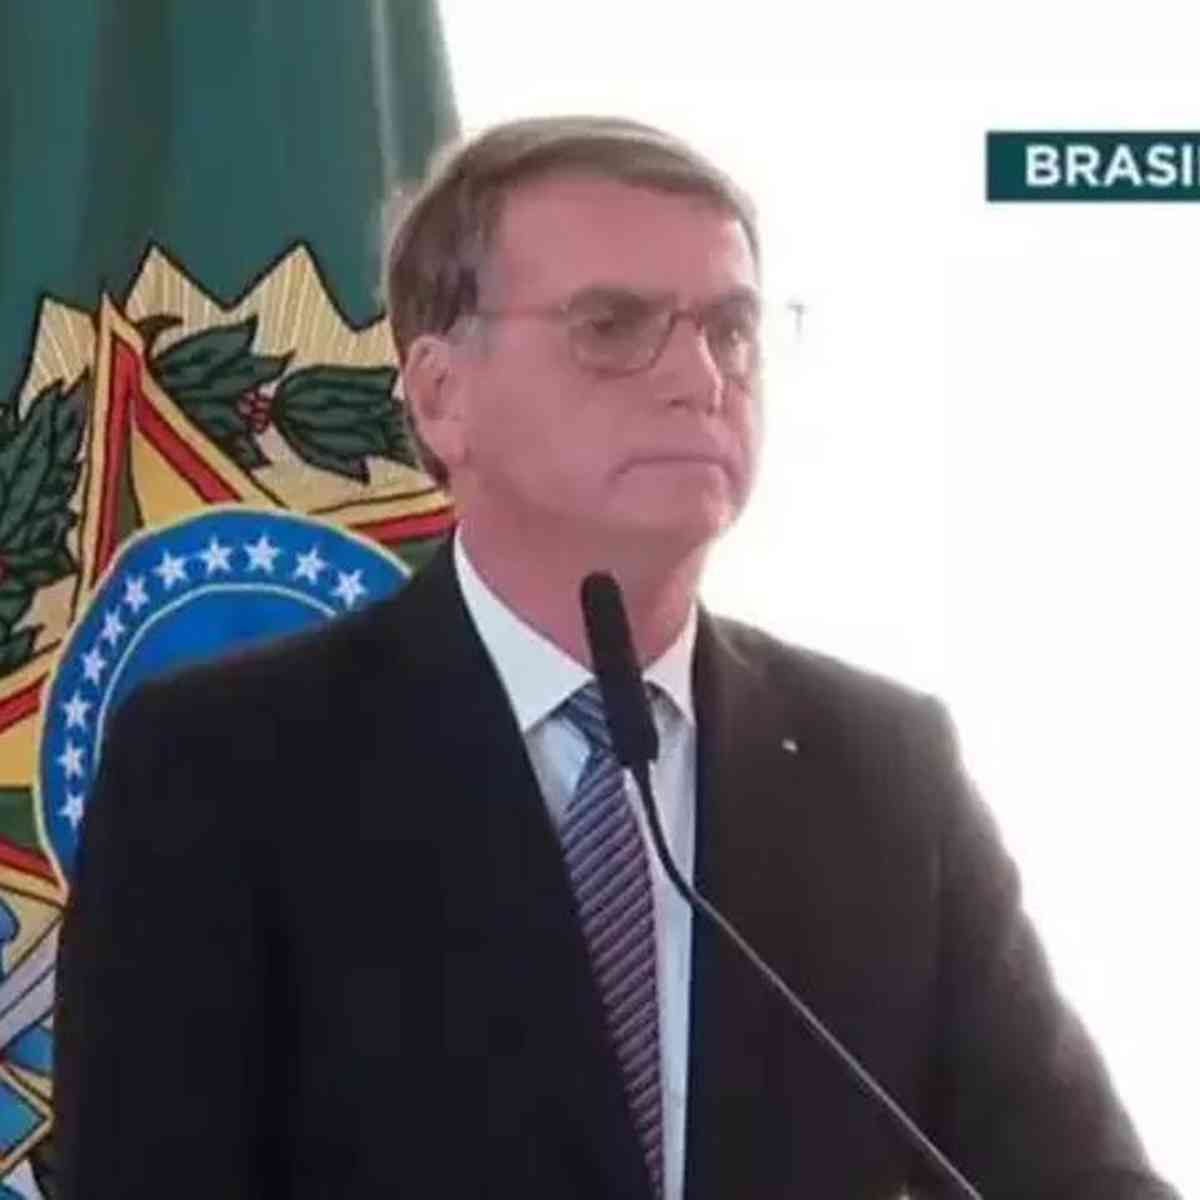 remove vídeos do canal do presidente Jair Bolsonaro